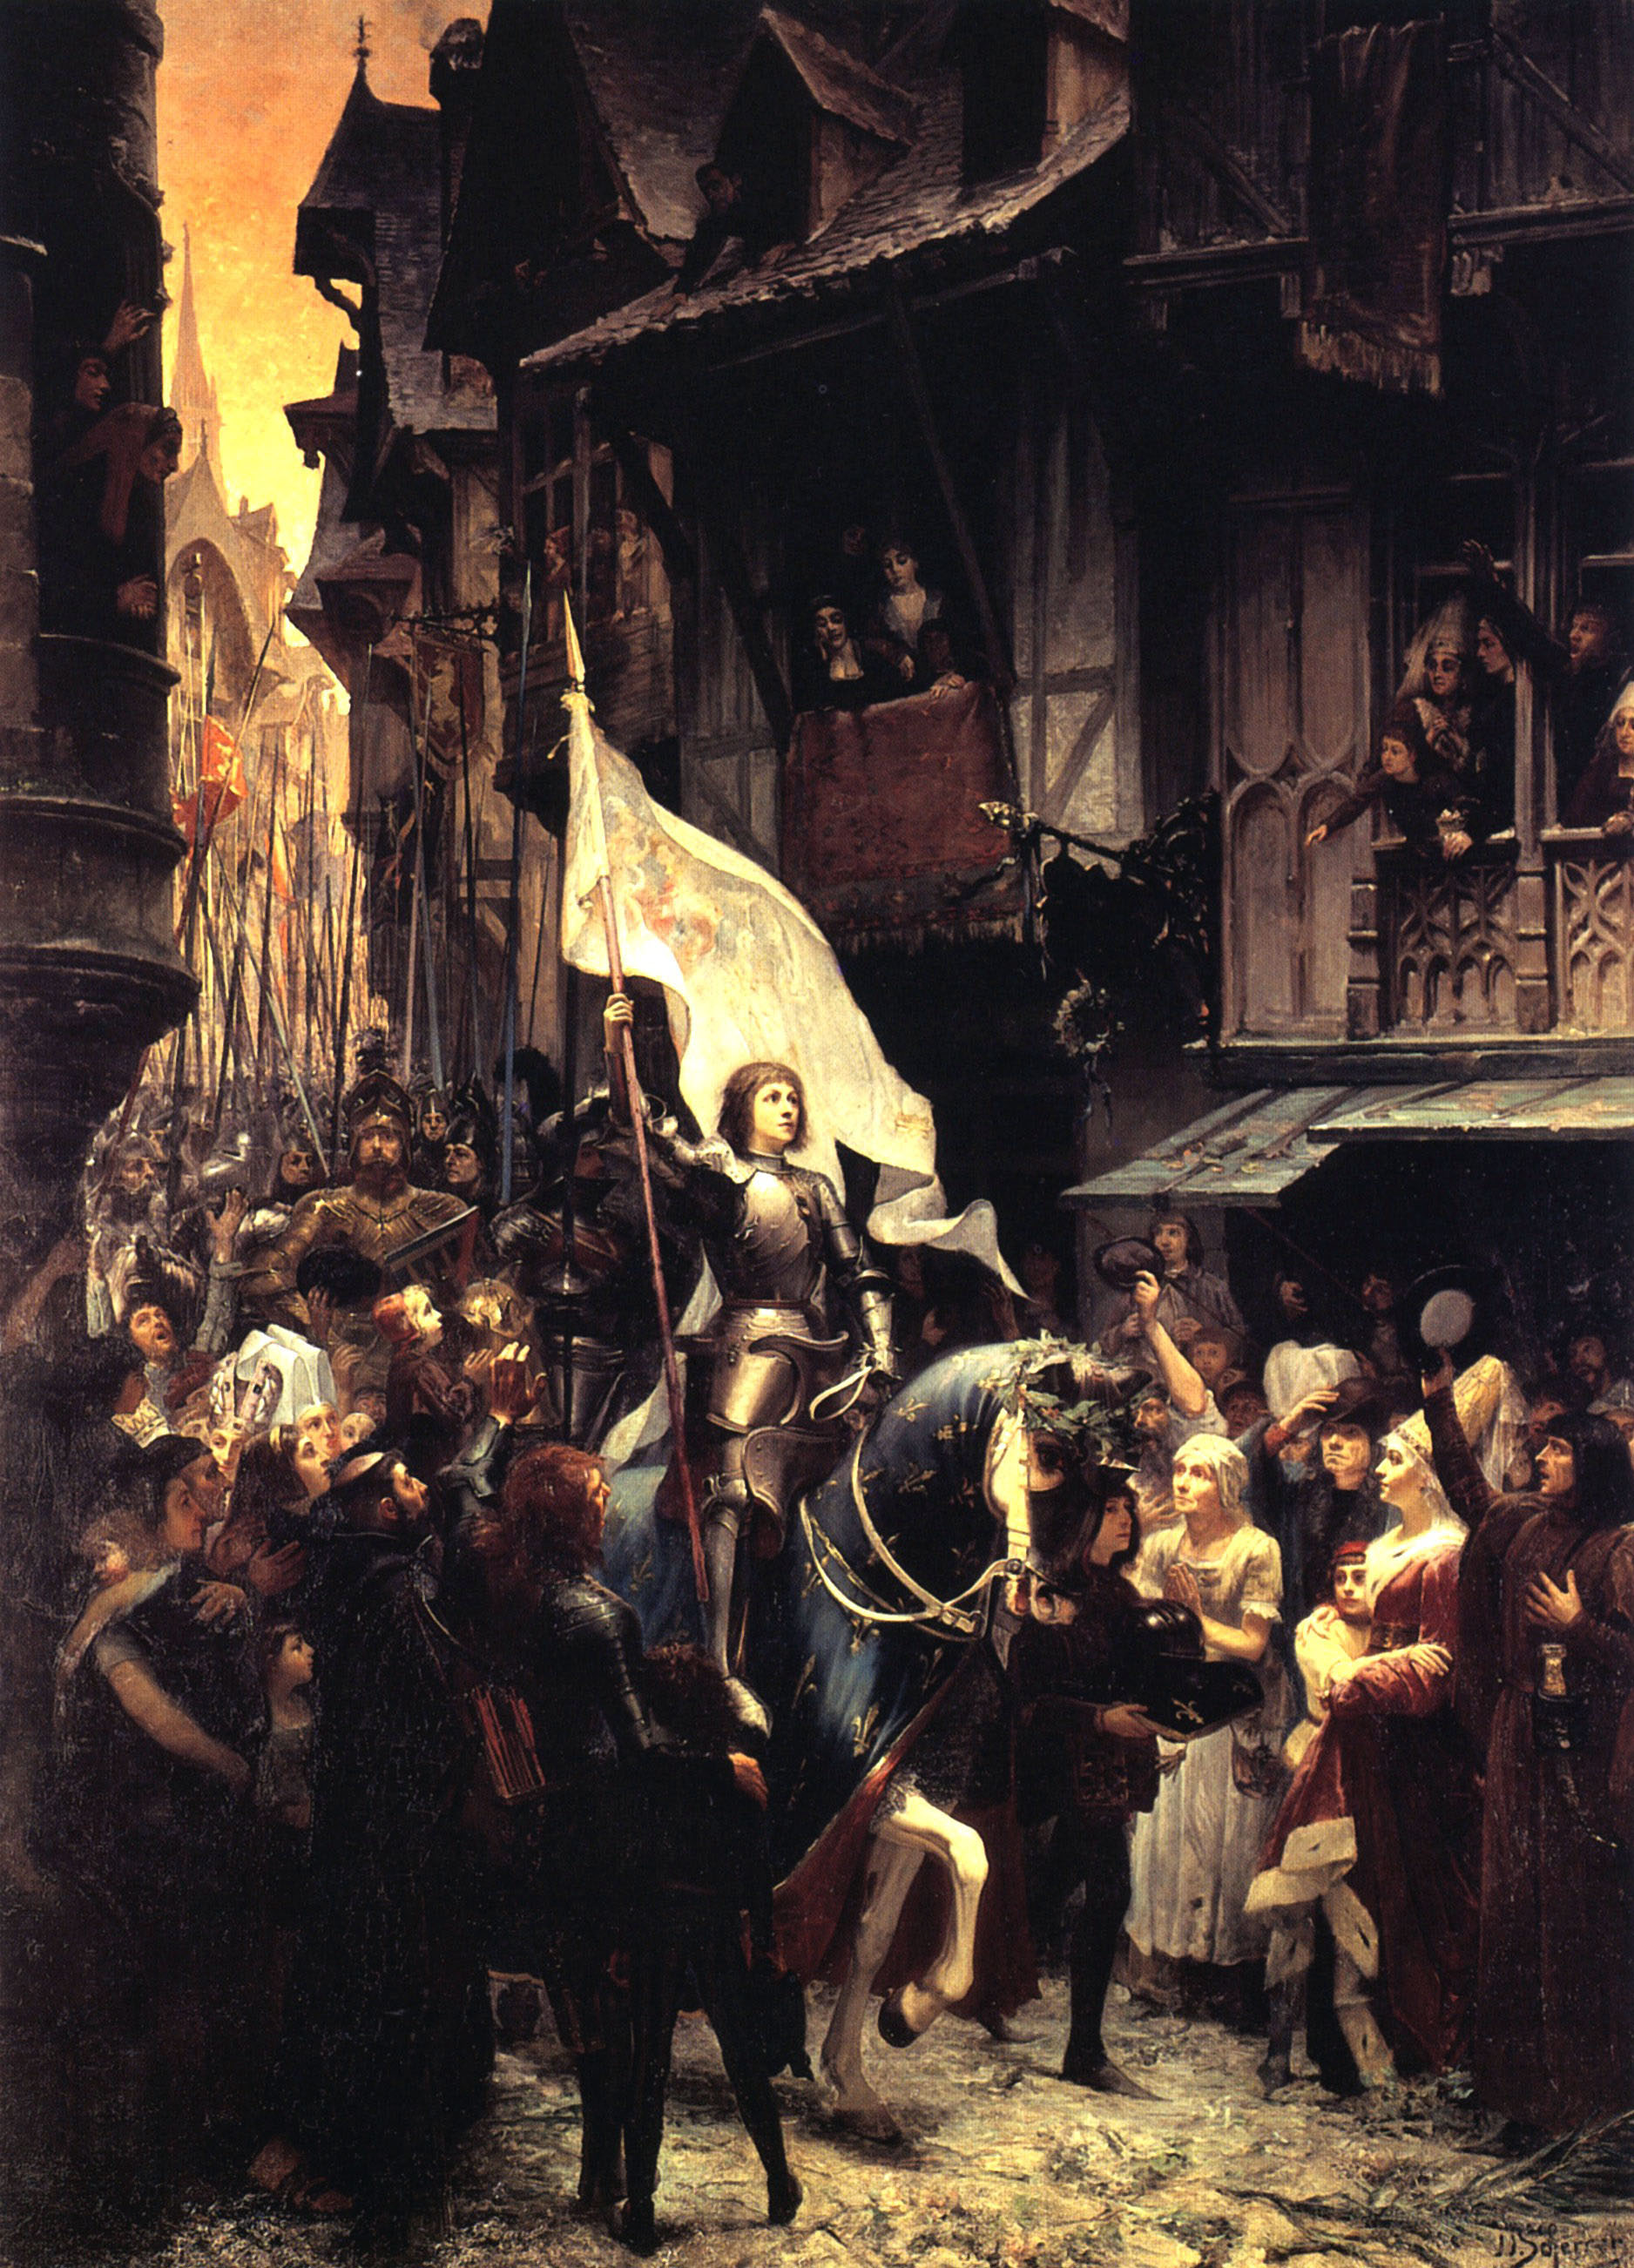 Жан-Жак Шеррер. "Въезд Жанны д'Арк в Орлеан". 1887. Музей изобразительных искусств.